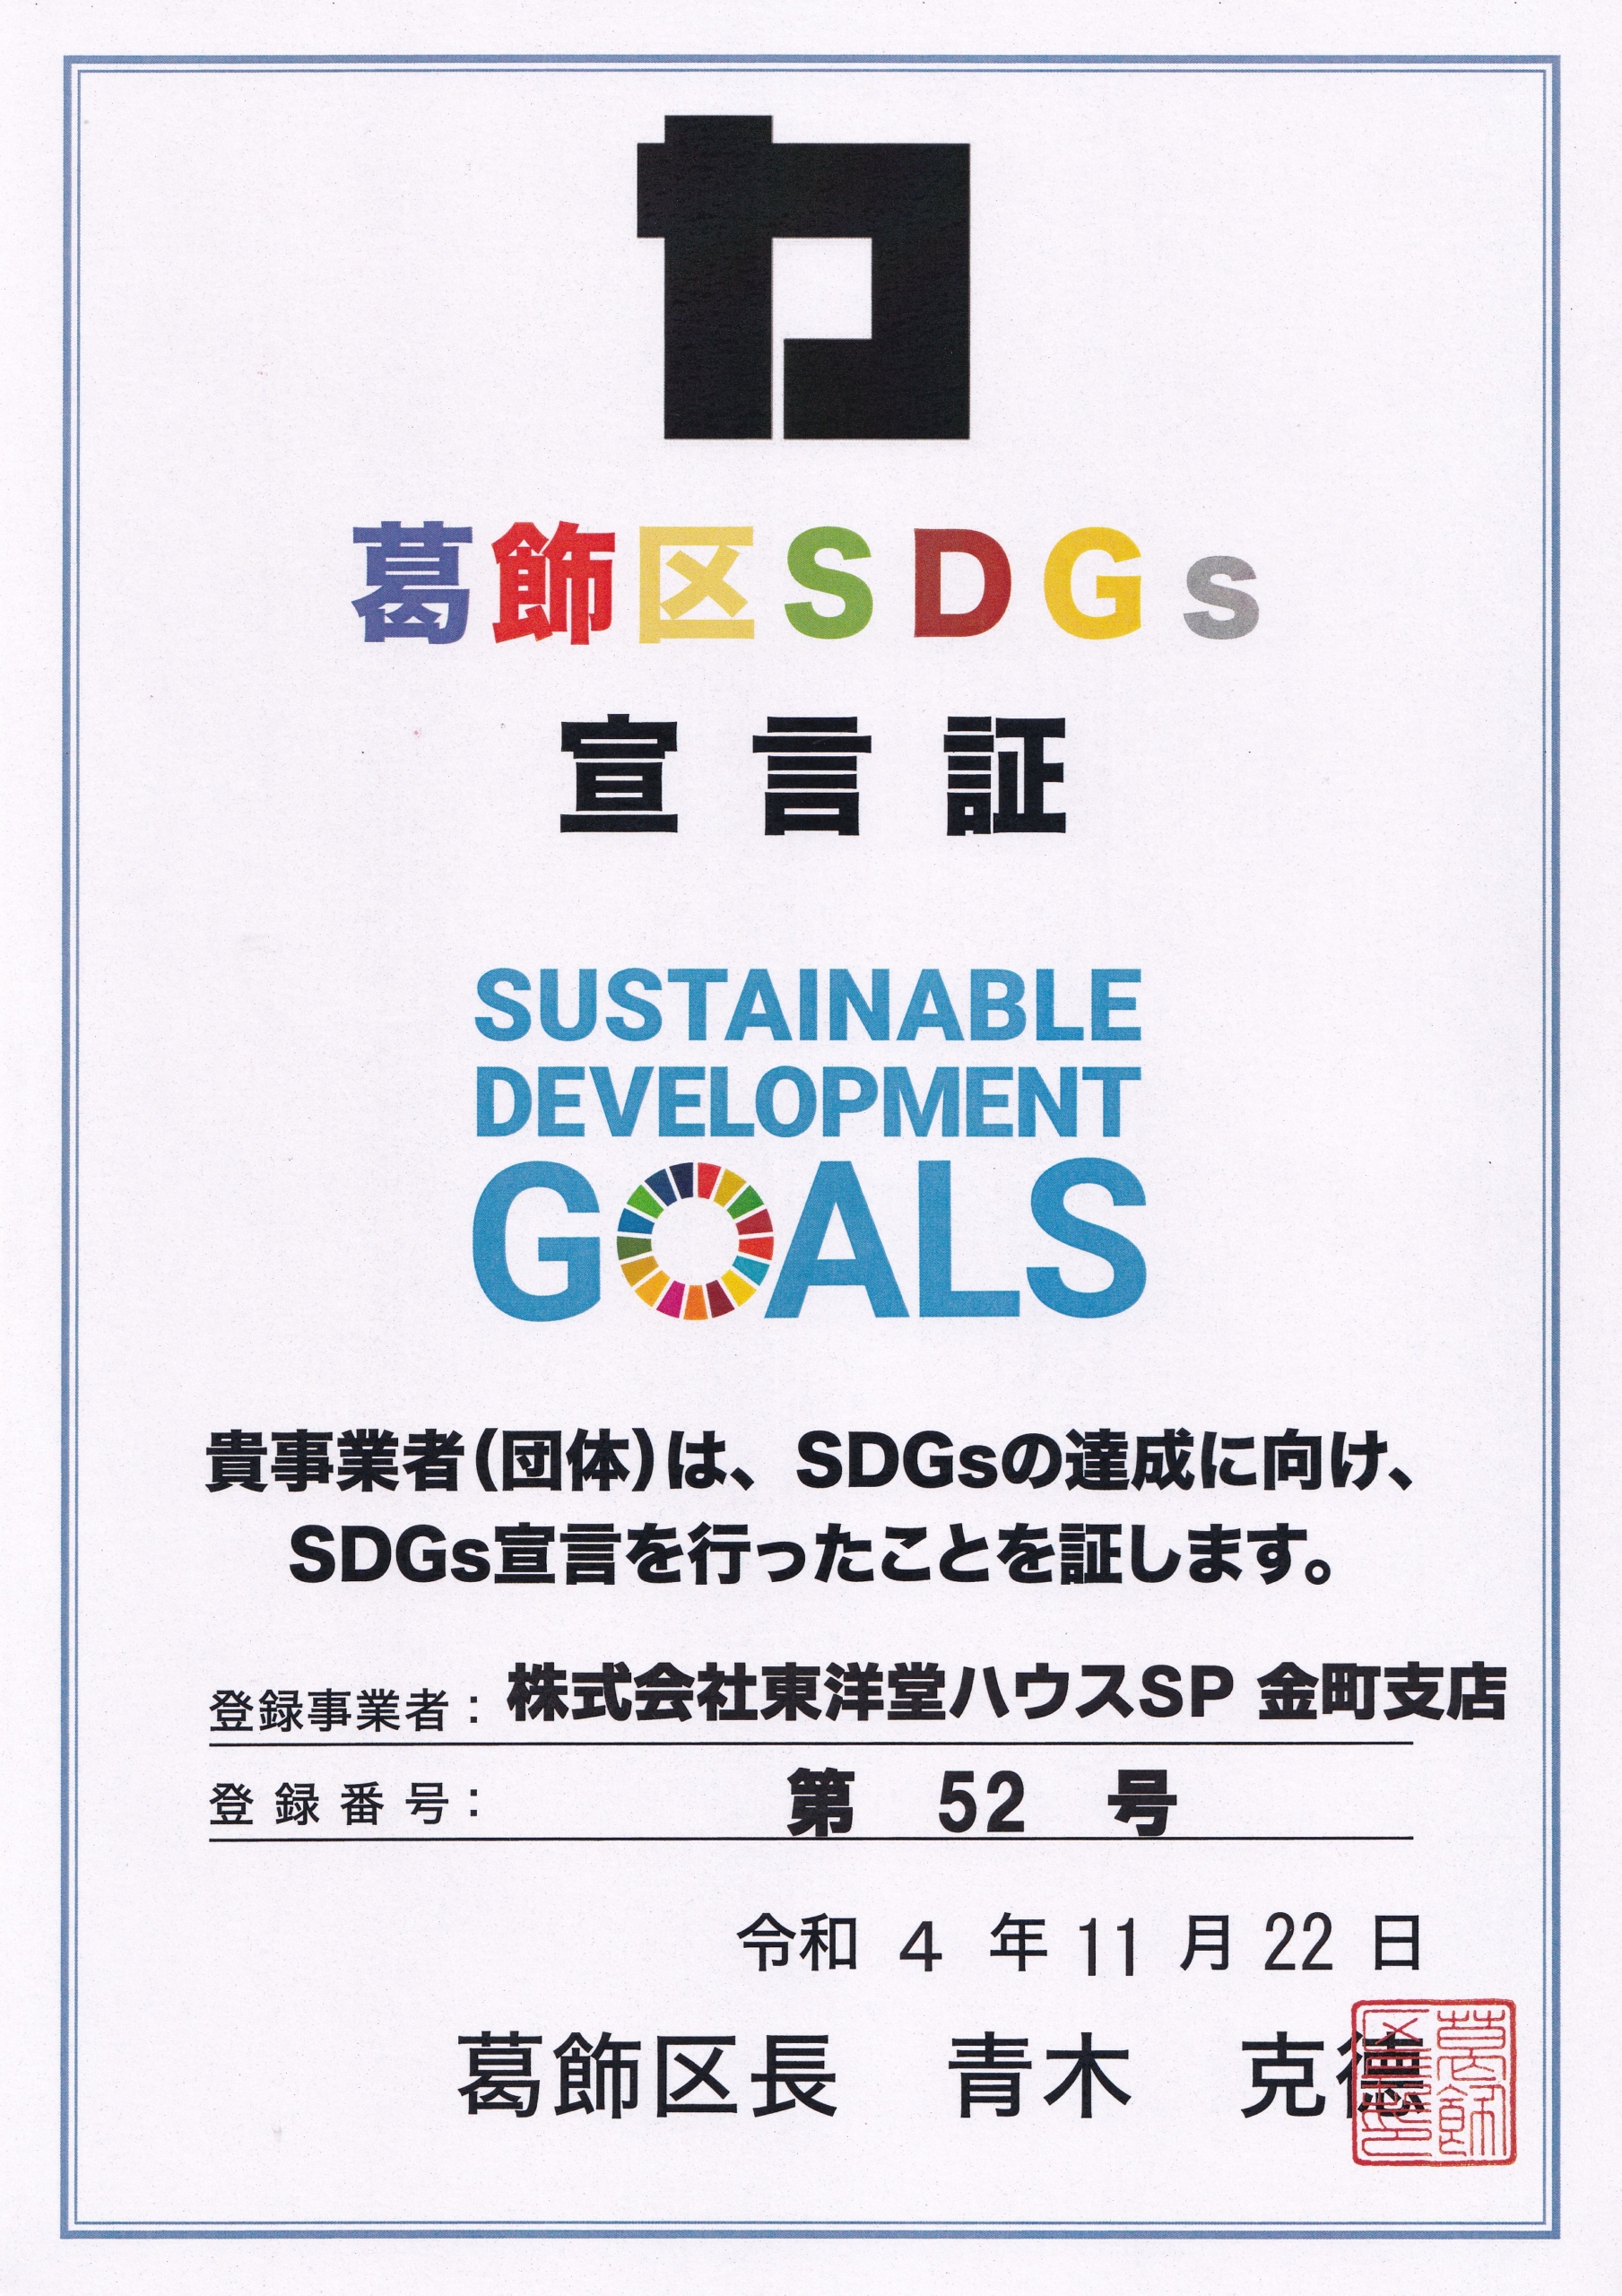 SDGs宣言事業